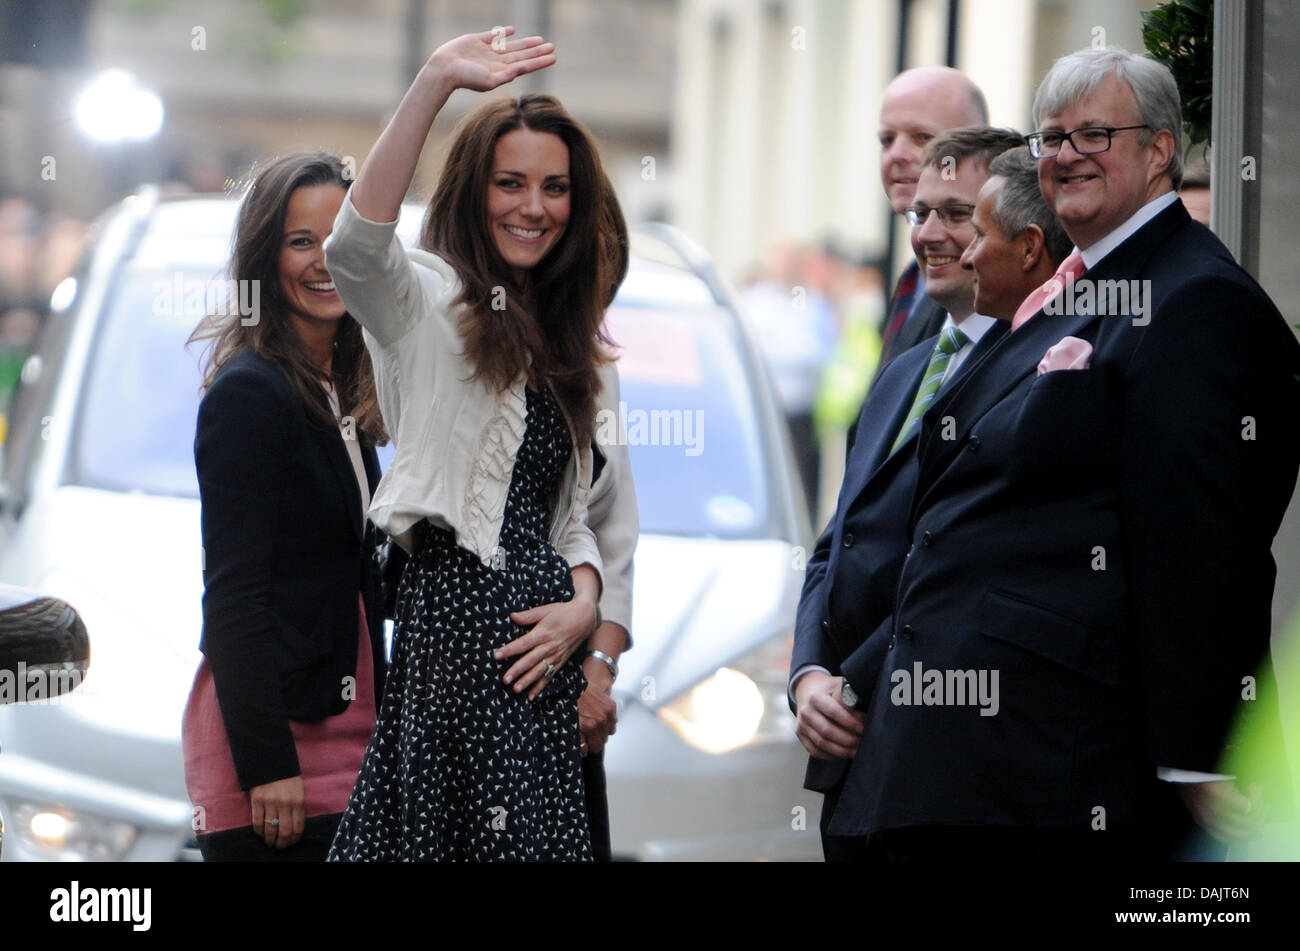 Kate Middleton (M) winkt der Menschenmenge vor dem Goring Hotel in London, Vereinigtes Königreich, 28. April 2011. Sie begleitet ihre Schwester Pippa (L) und ihre Mutter Carole (gesperrt). London bereitet sich auf die königliche Hochzeit von Großbritanniens Prinz William und Kate Middleton in der Westminster Abbey am 29. April. Foto: Frank Mai Stockfoto